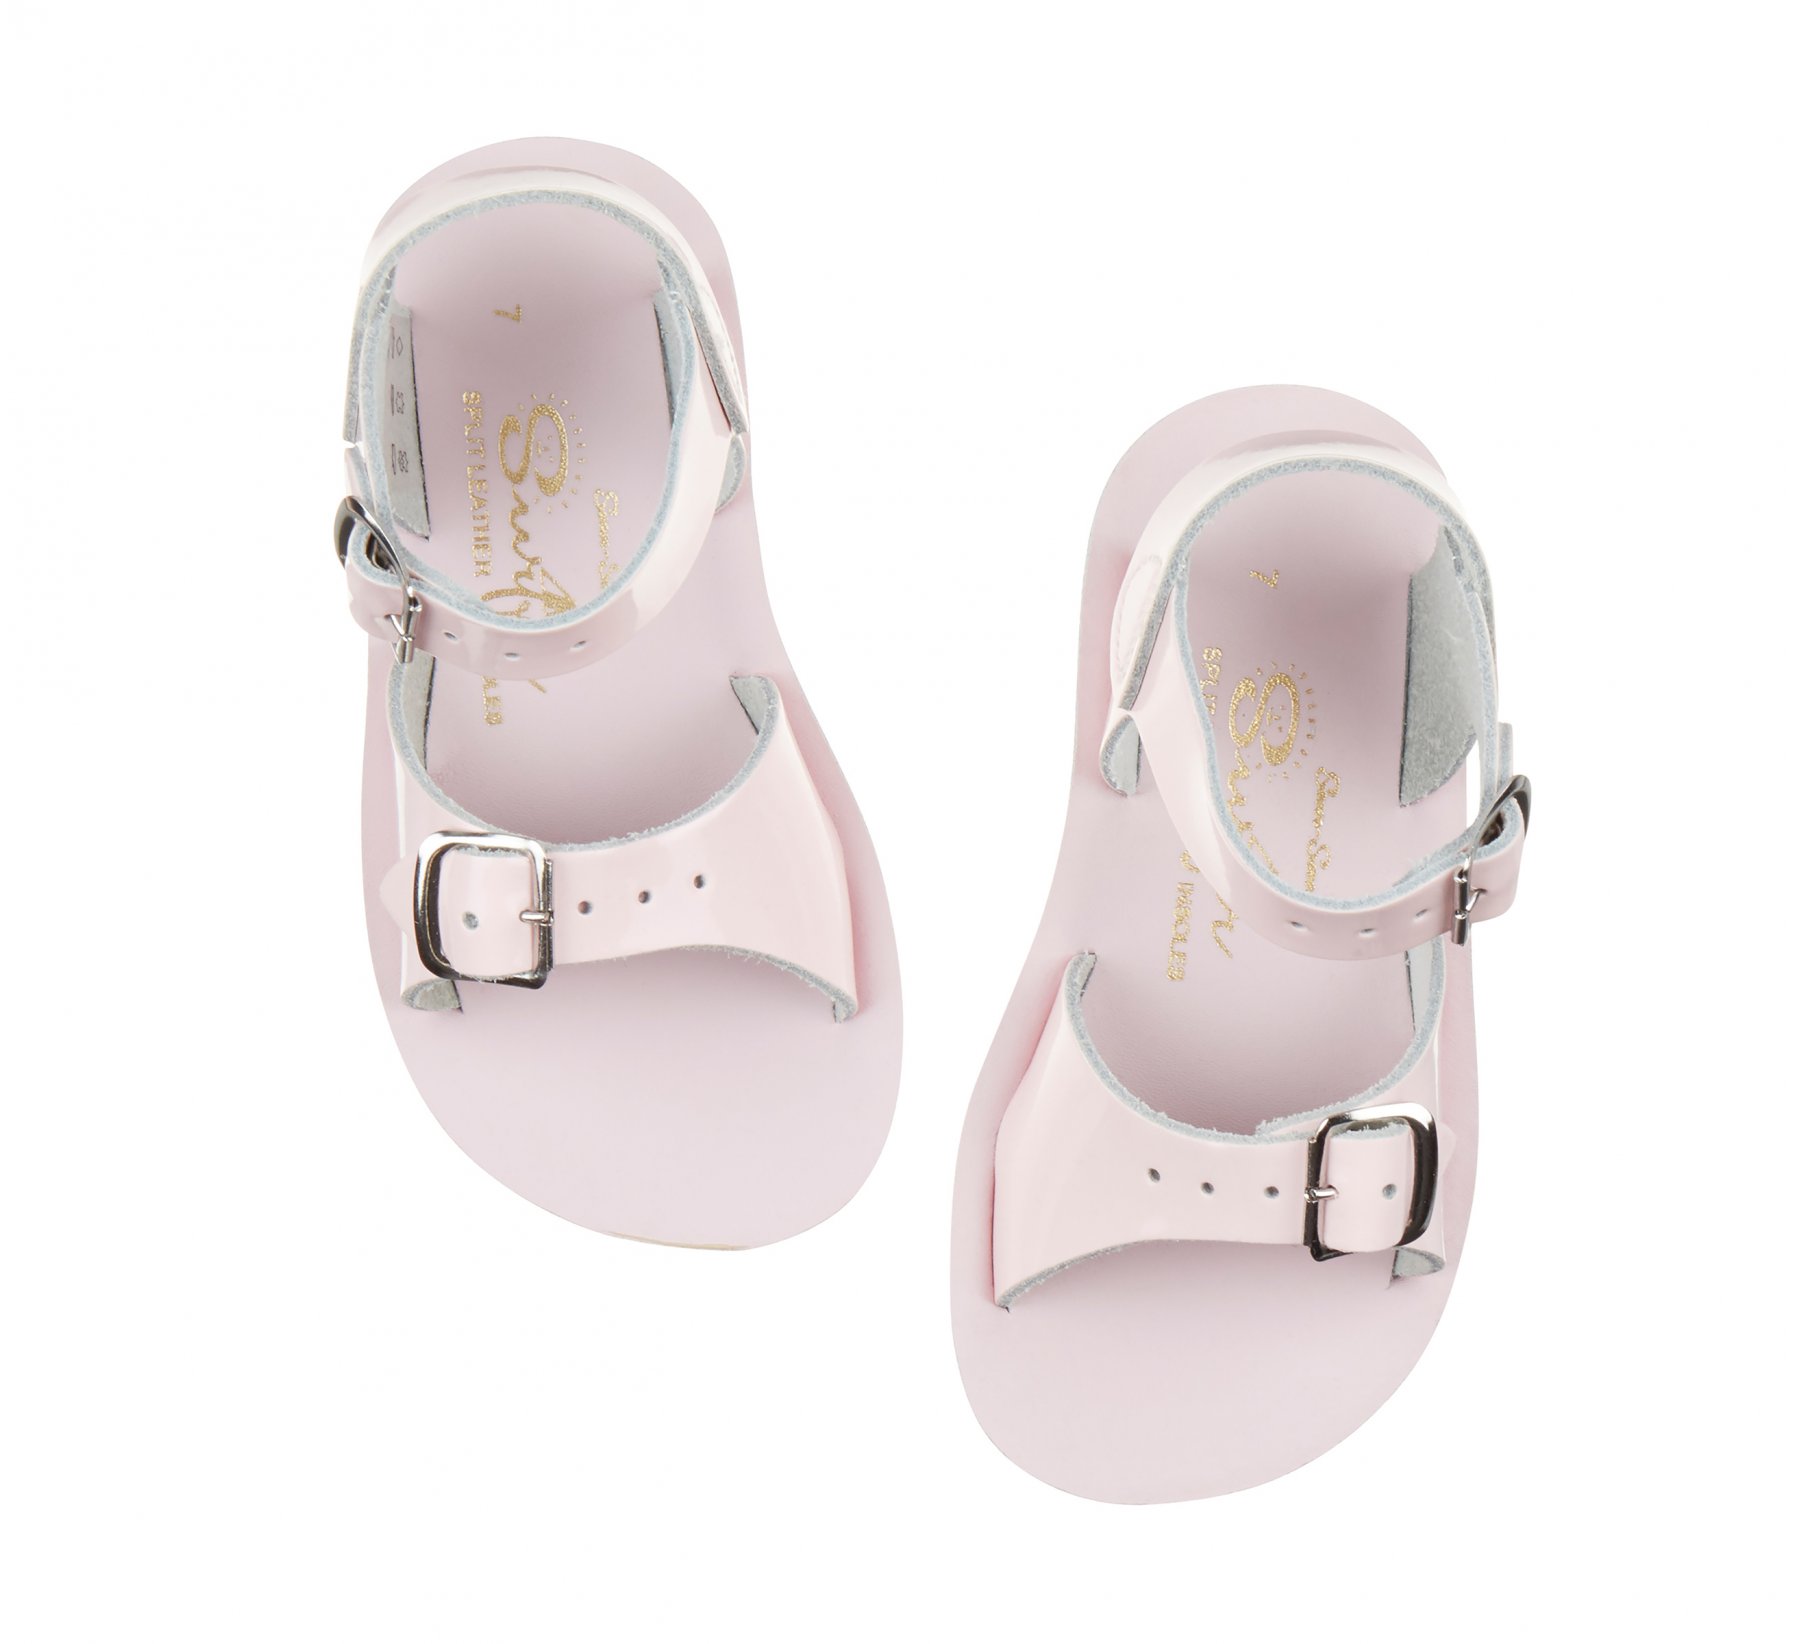 Surfer Shiny Pink Kids Sandals - Salt Water Sandals